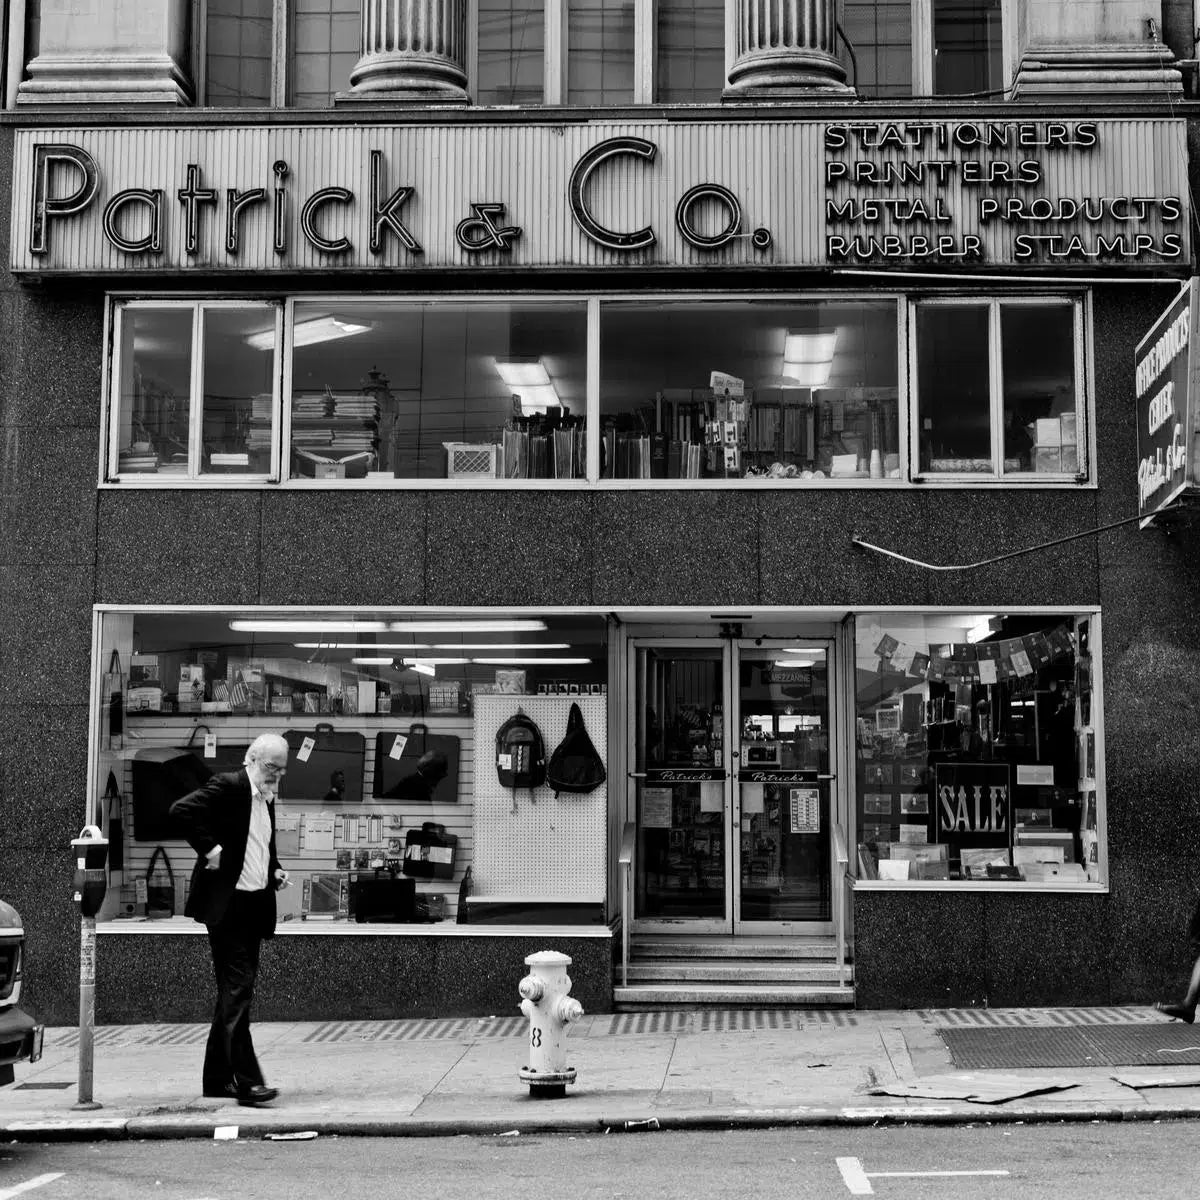 Patrick & Co., by Jeremy Brooks-PurePhoto